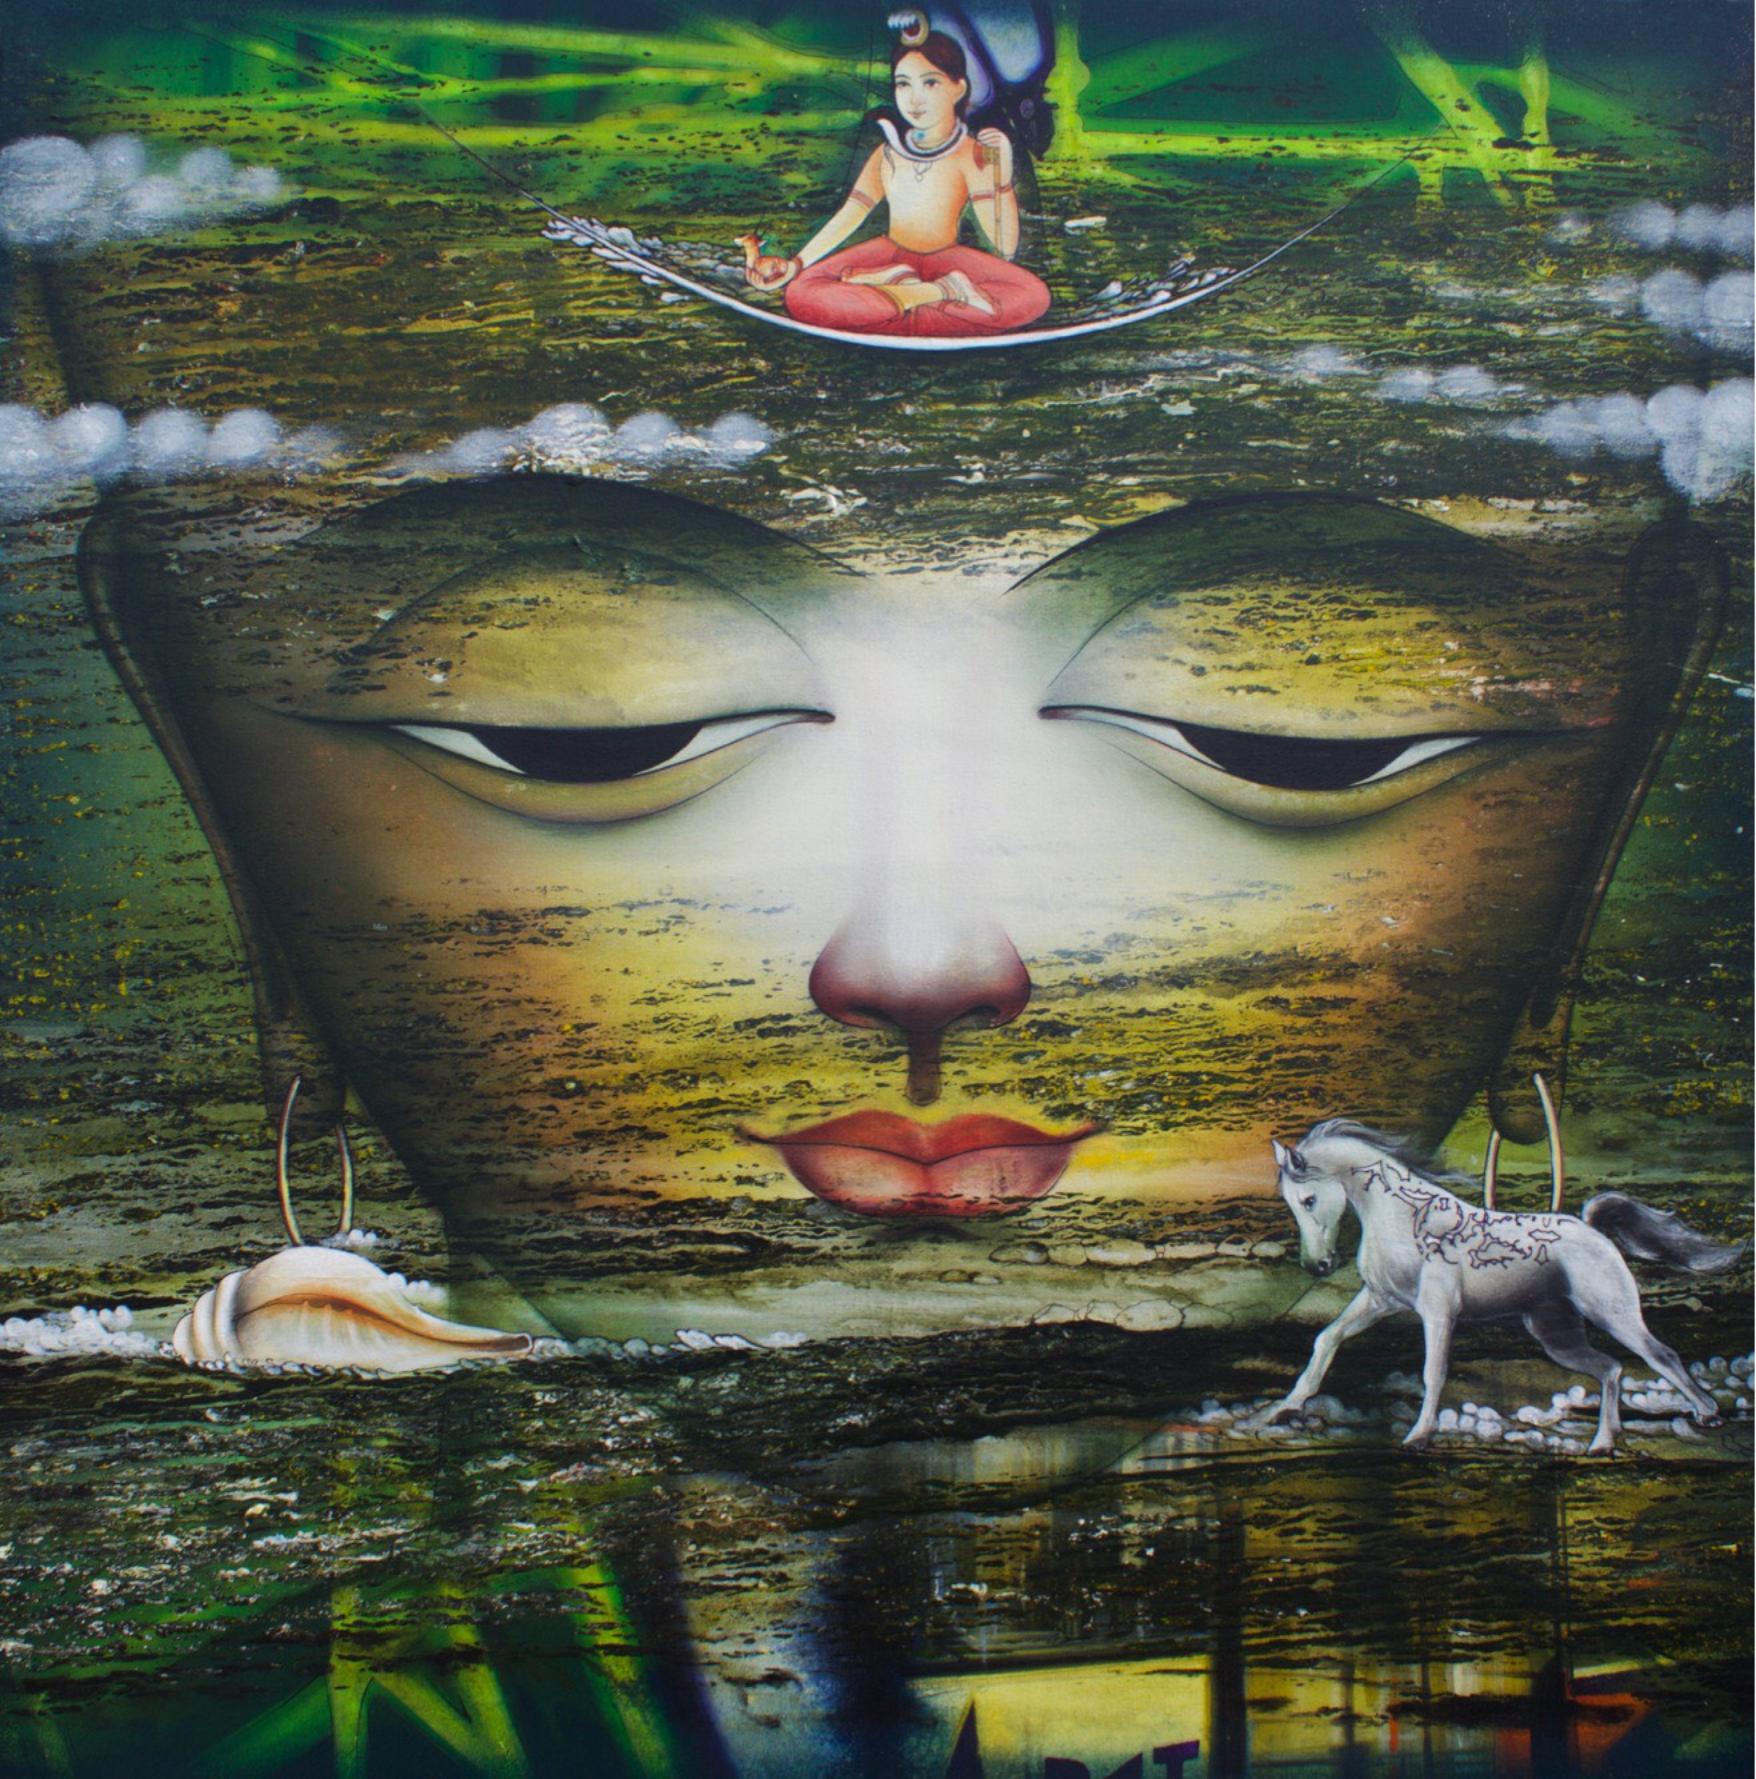 Vishwaroopam, Indian Mythology, Mixed Media, Green, Red, Yellow, Blue 